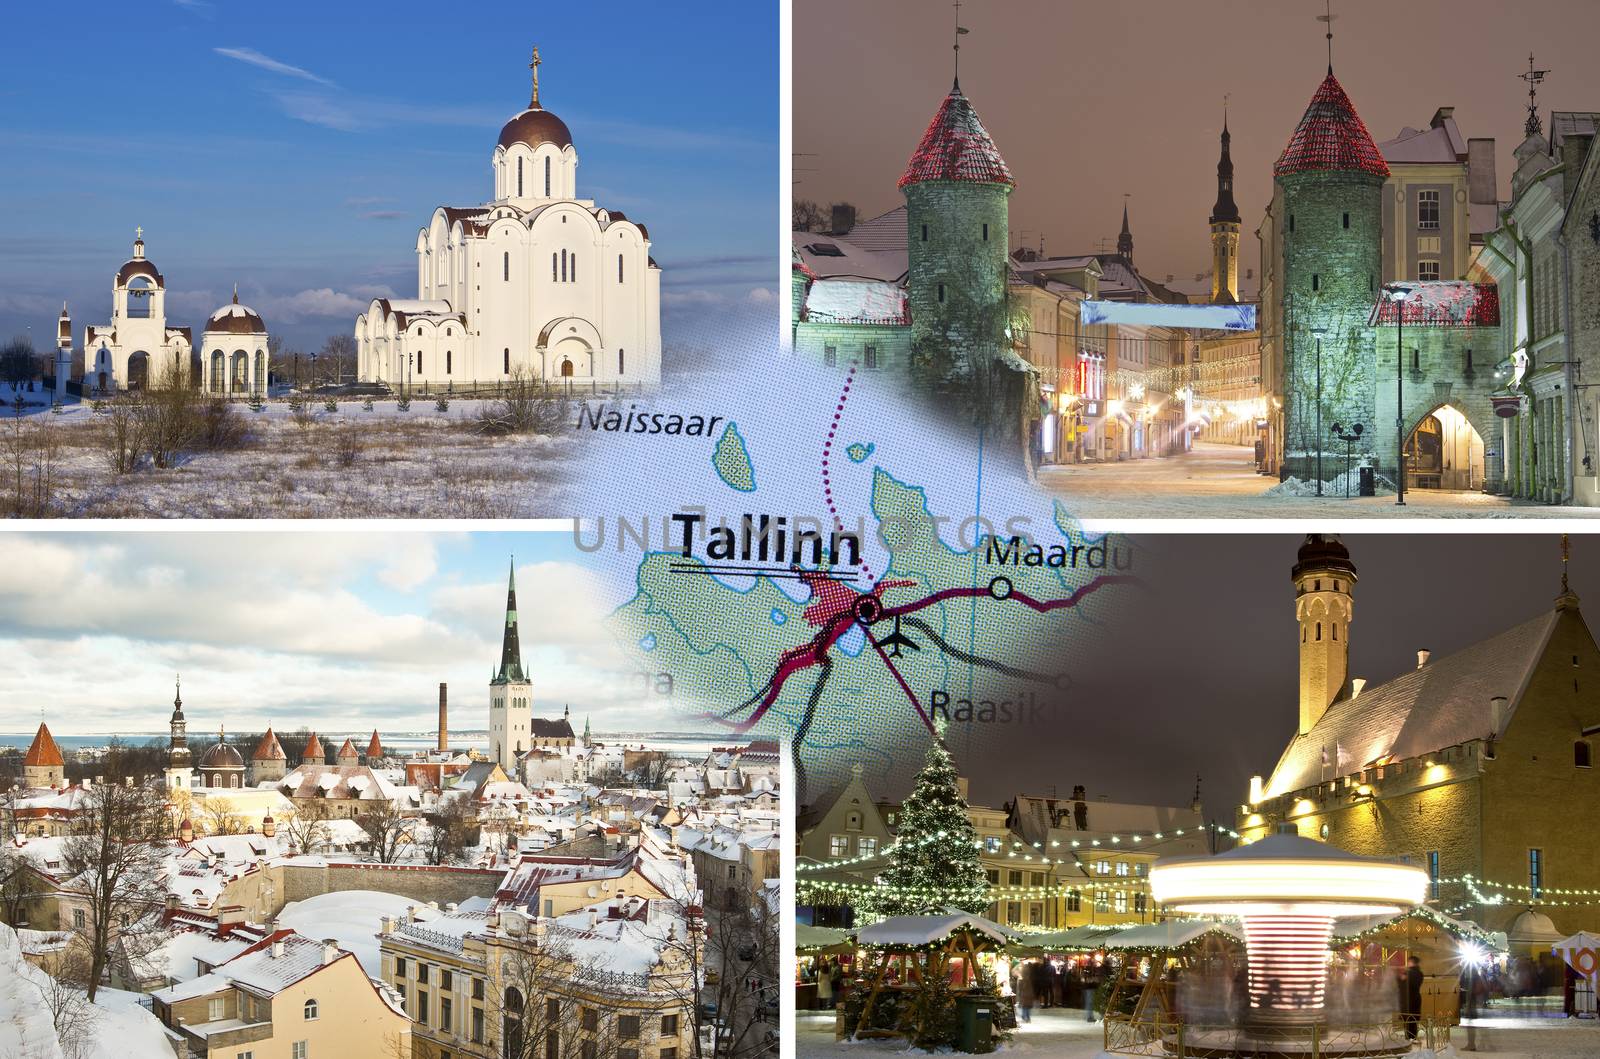 Winter collage of Tallinn, Estonia